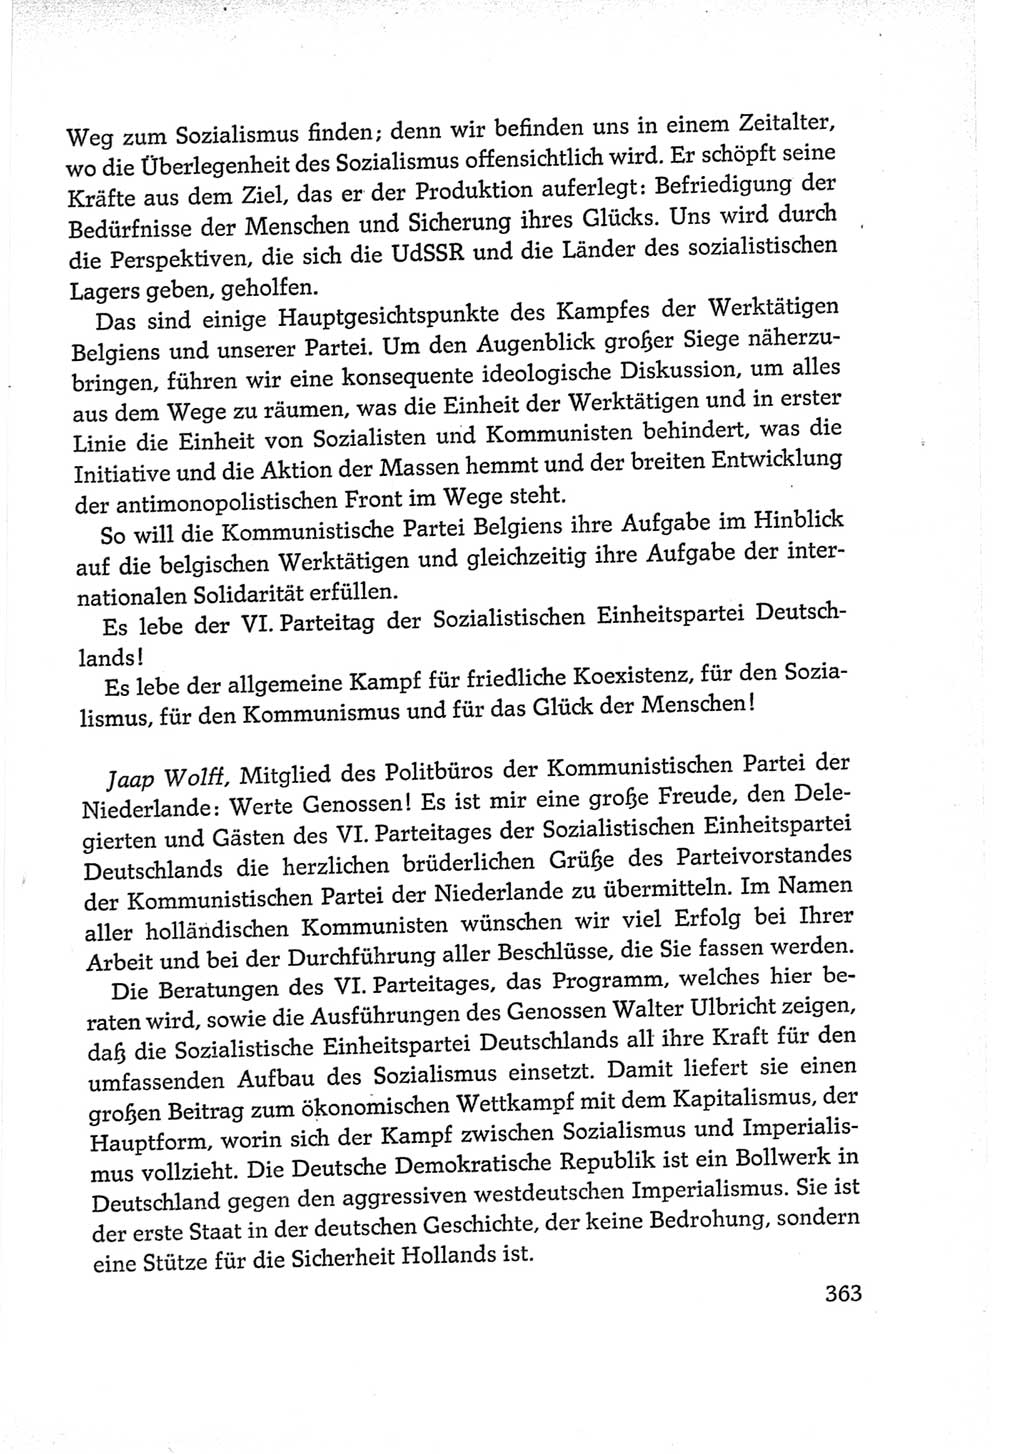 Protokoll der Verhandlungen des Ⅵ. Parteitages der Sozialistischen Einheitspartei Deutschlands (SED) [Deutsche Demokratische Republik (DDR)] 1963, Band Ⅱ, Seite 363 (Prot. Verh. Ⅵ. PT SED DDR 1963, Bd. Ⅱ, S. 363)